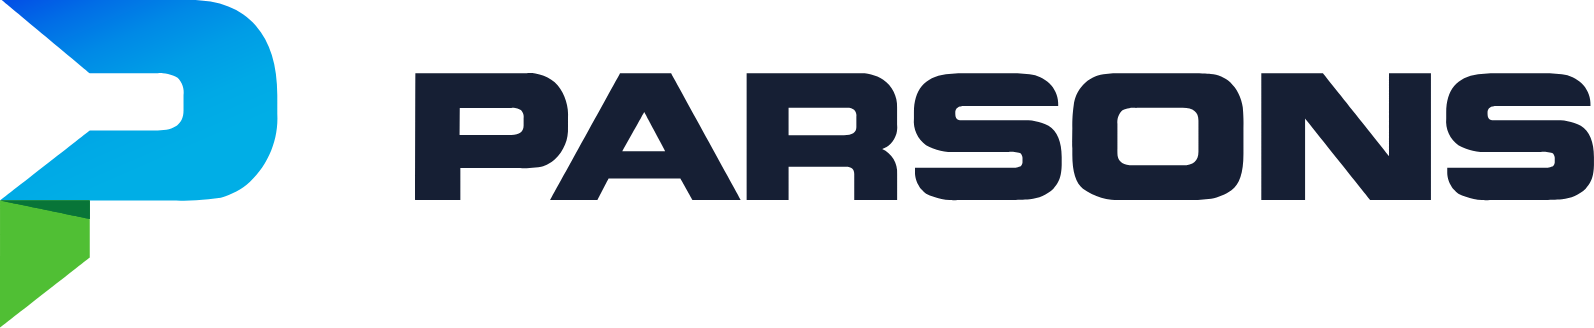 Parsons logo large (transparent PNG)